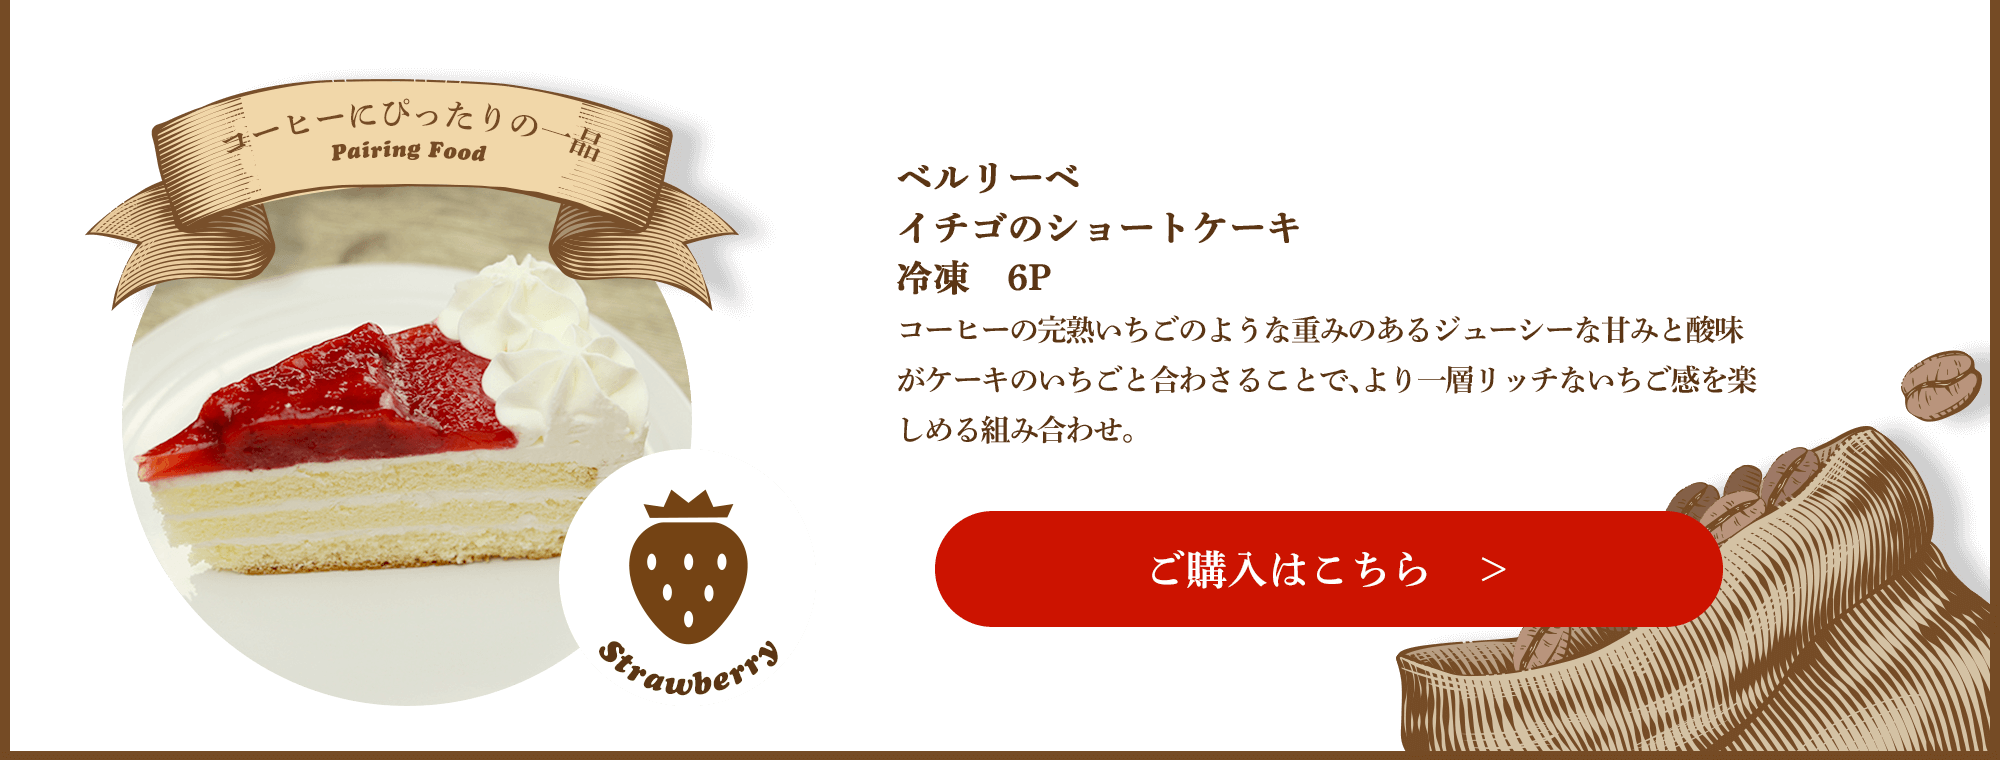 ベルリーベ シいちごのショートケーキ 冷凍 6P